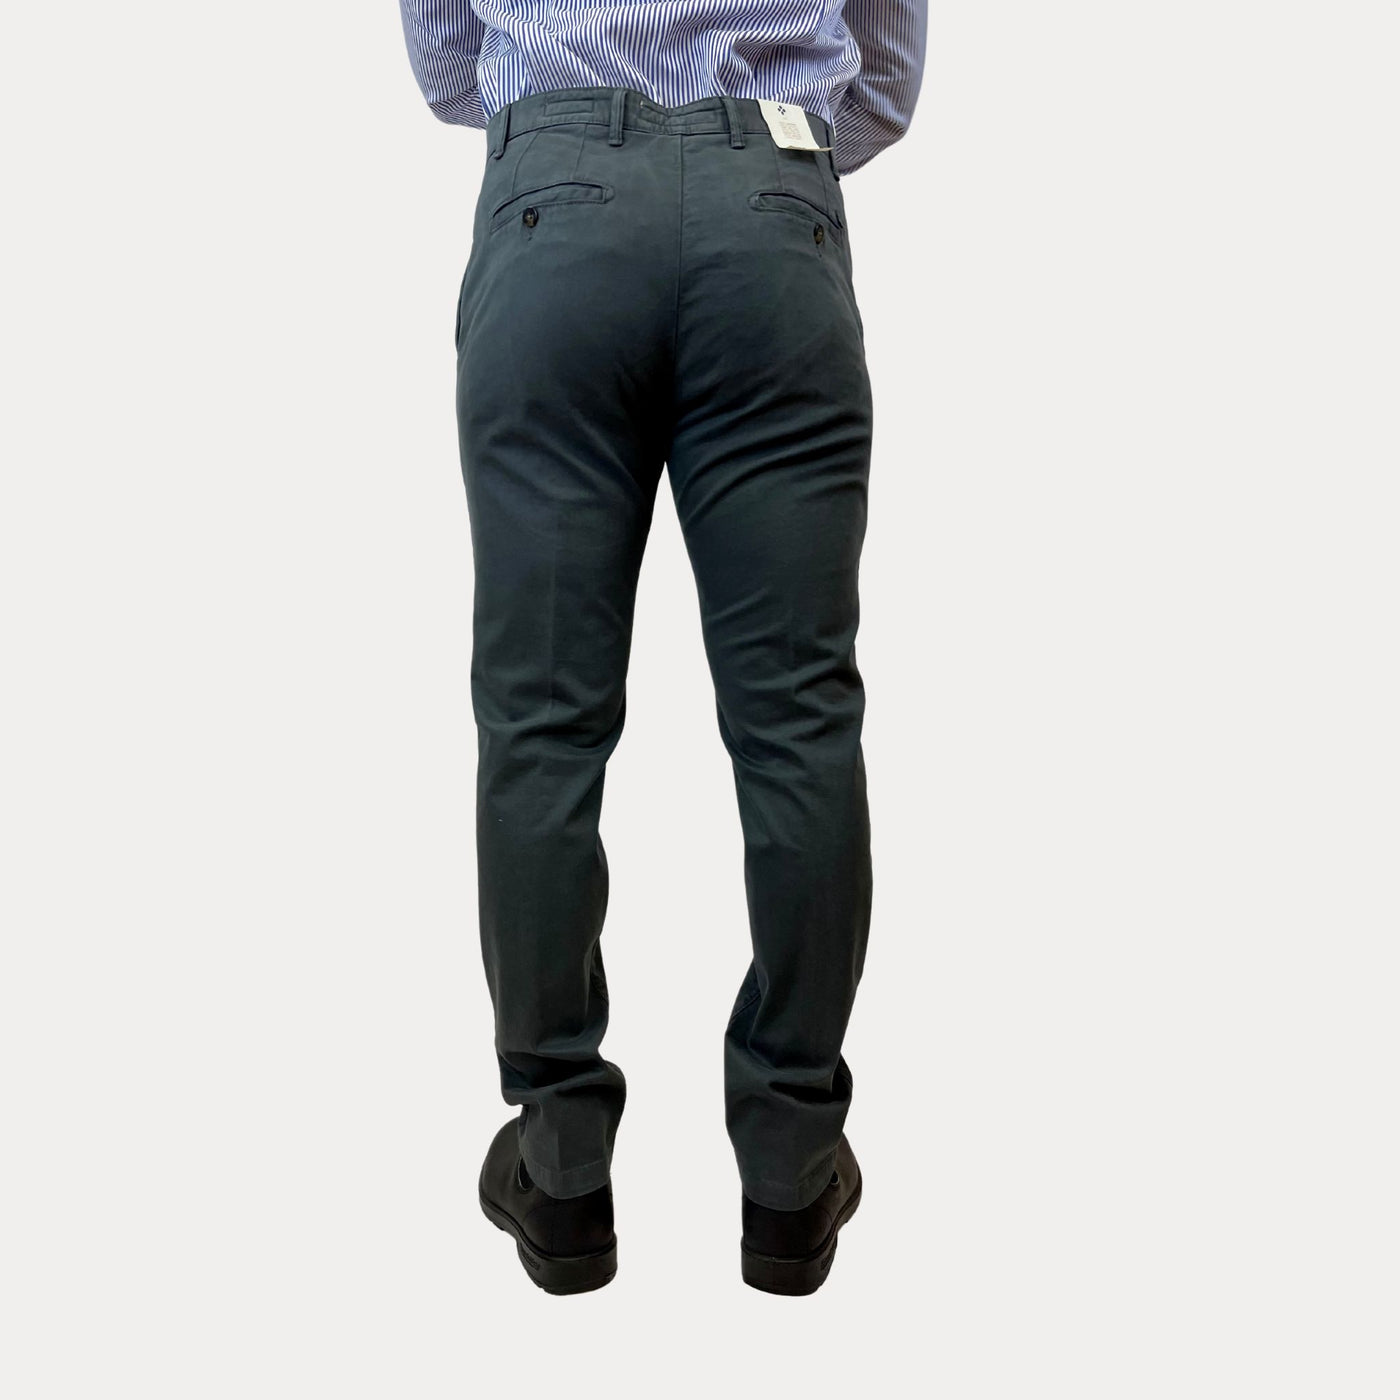 Pantalone da uomo antracite vista retro su modello